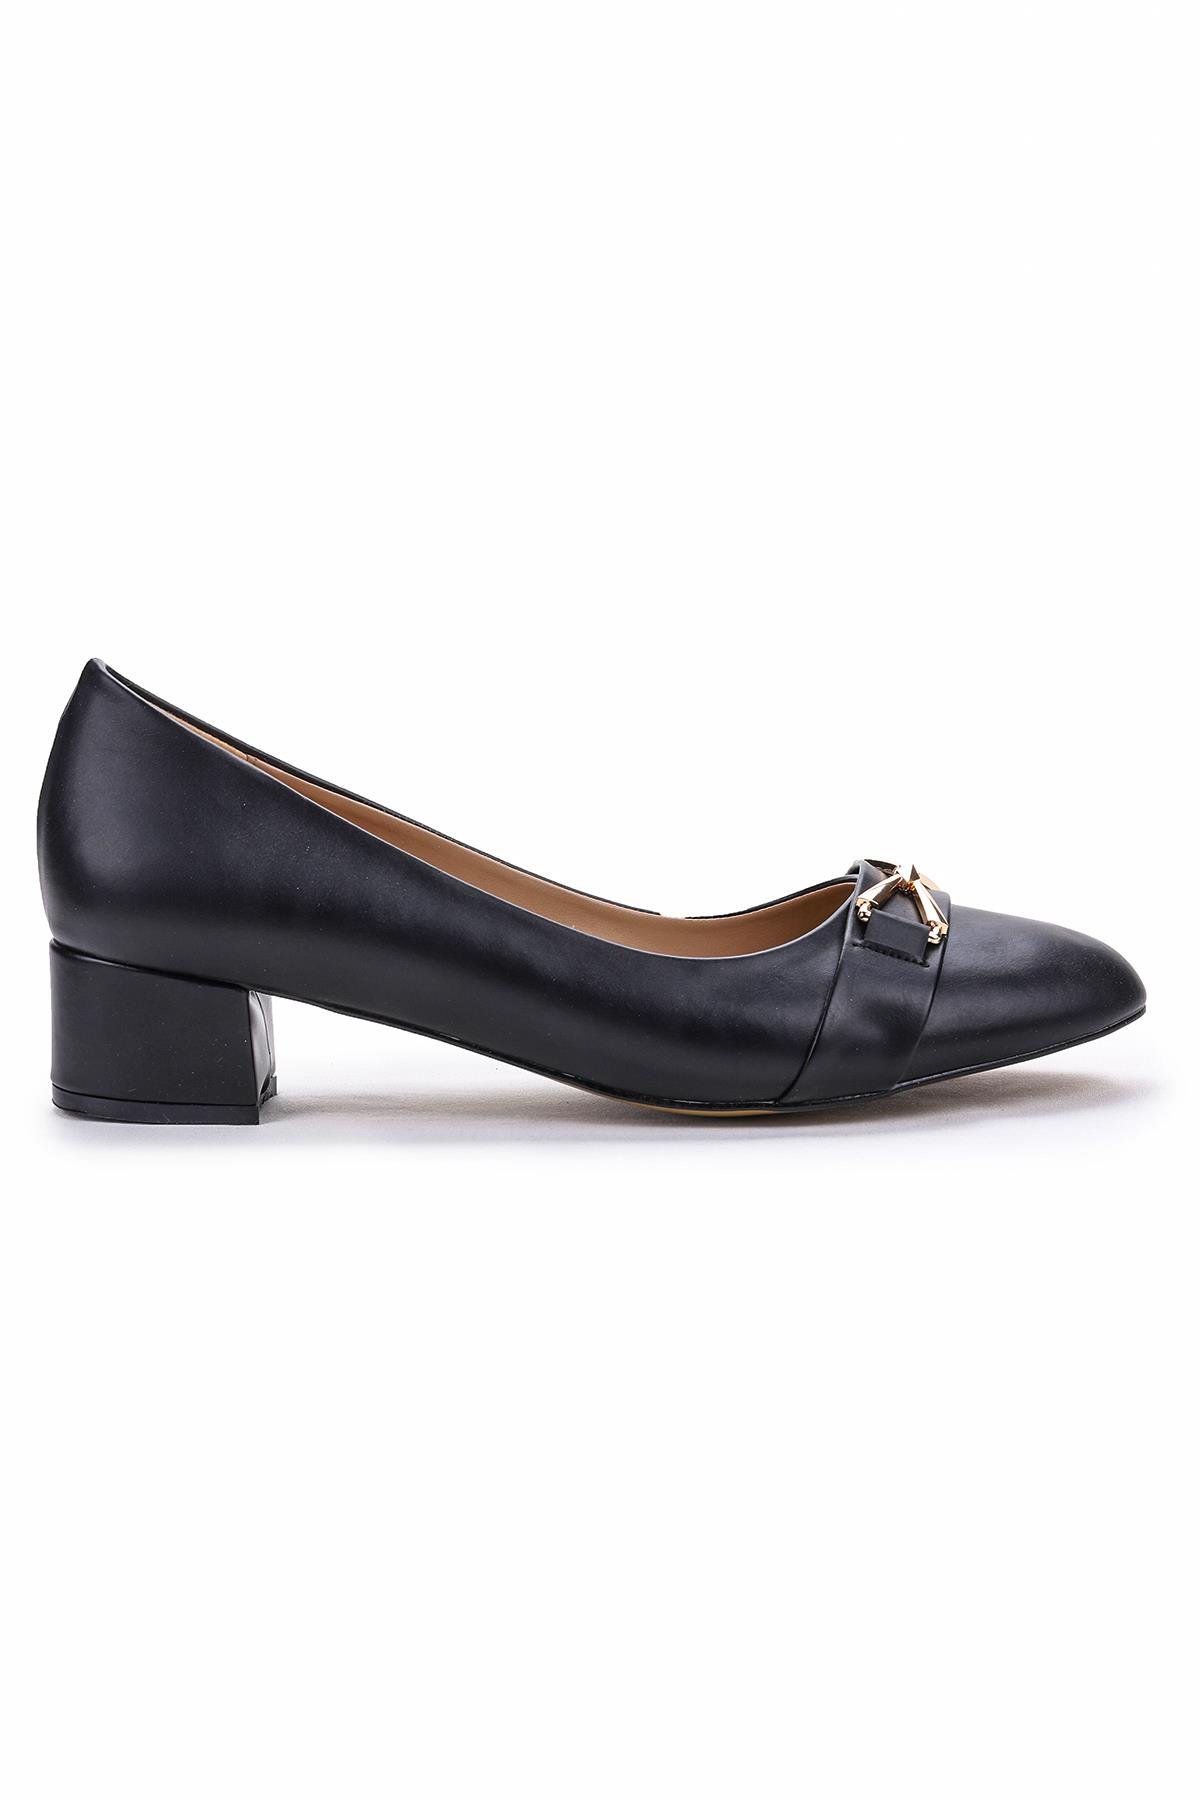 Malcom Büyük Numara Kadın 4 Cm Topuklu Babet Ayakkabı Siyah